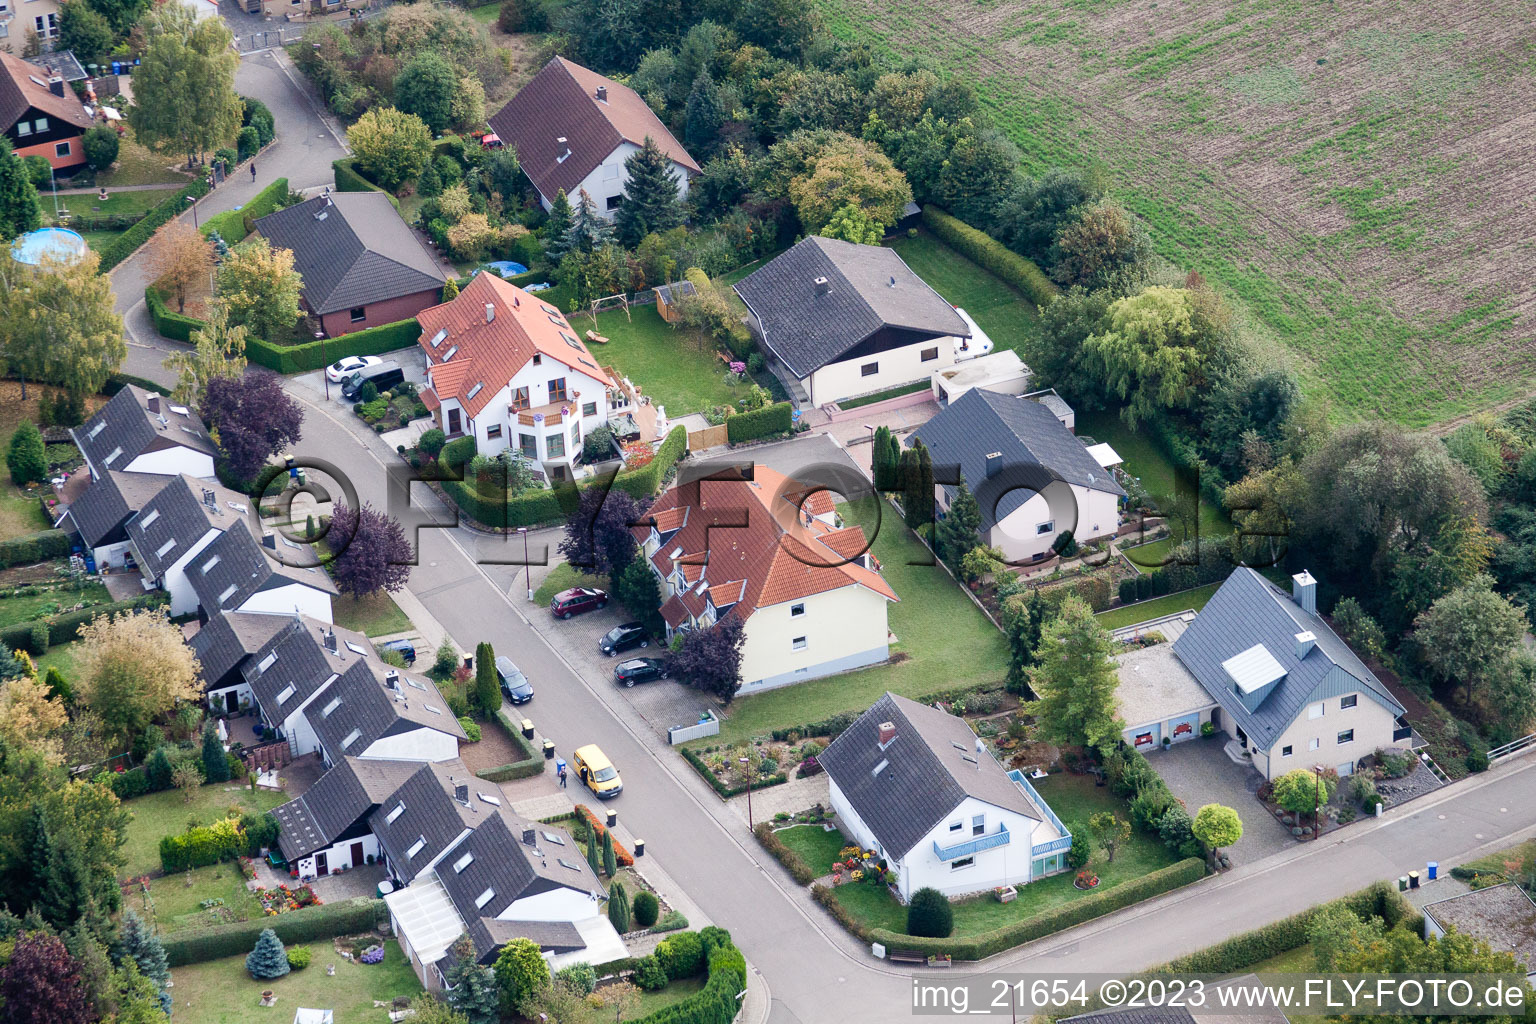 Eppelsheim im Bundesland Rheinland-Pfalz, Deutschland aus der Luft betrachtet